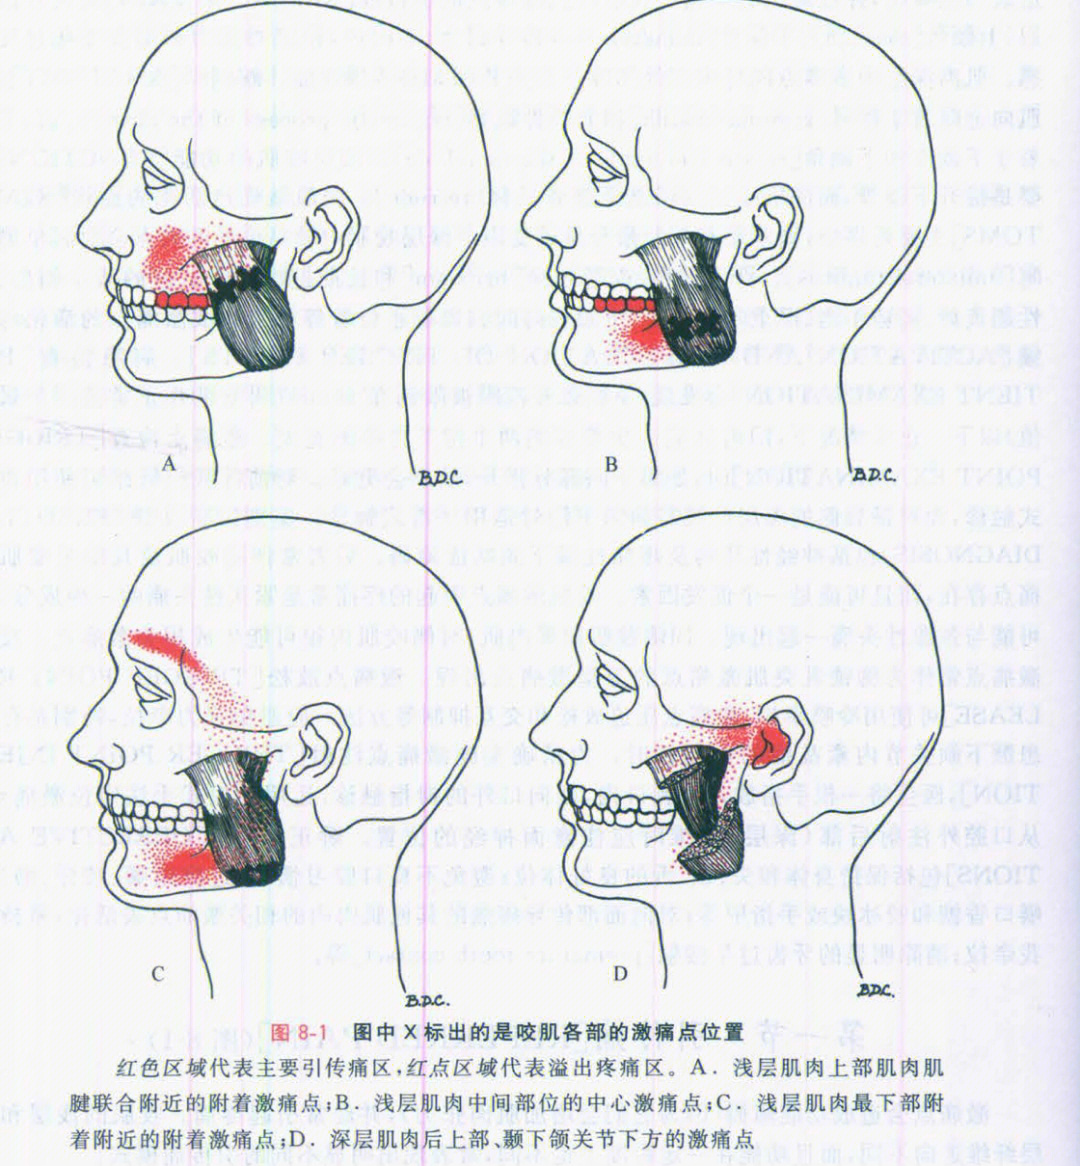 下颌舌隆突的位置图片图片